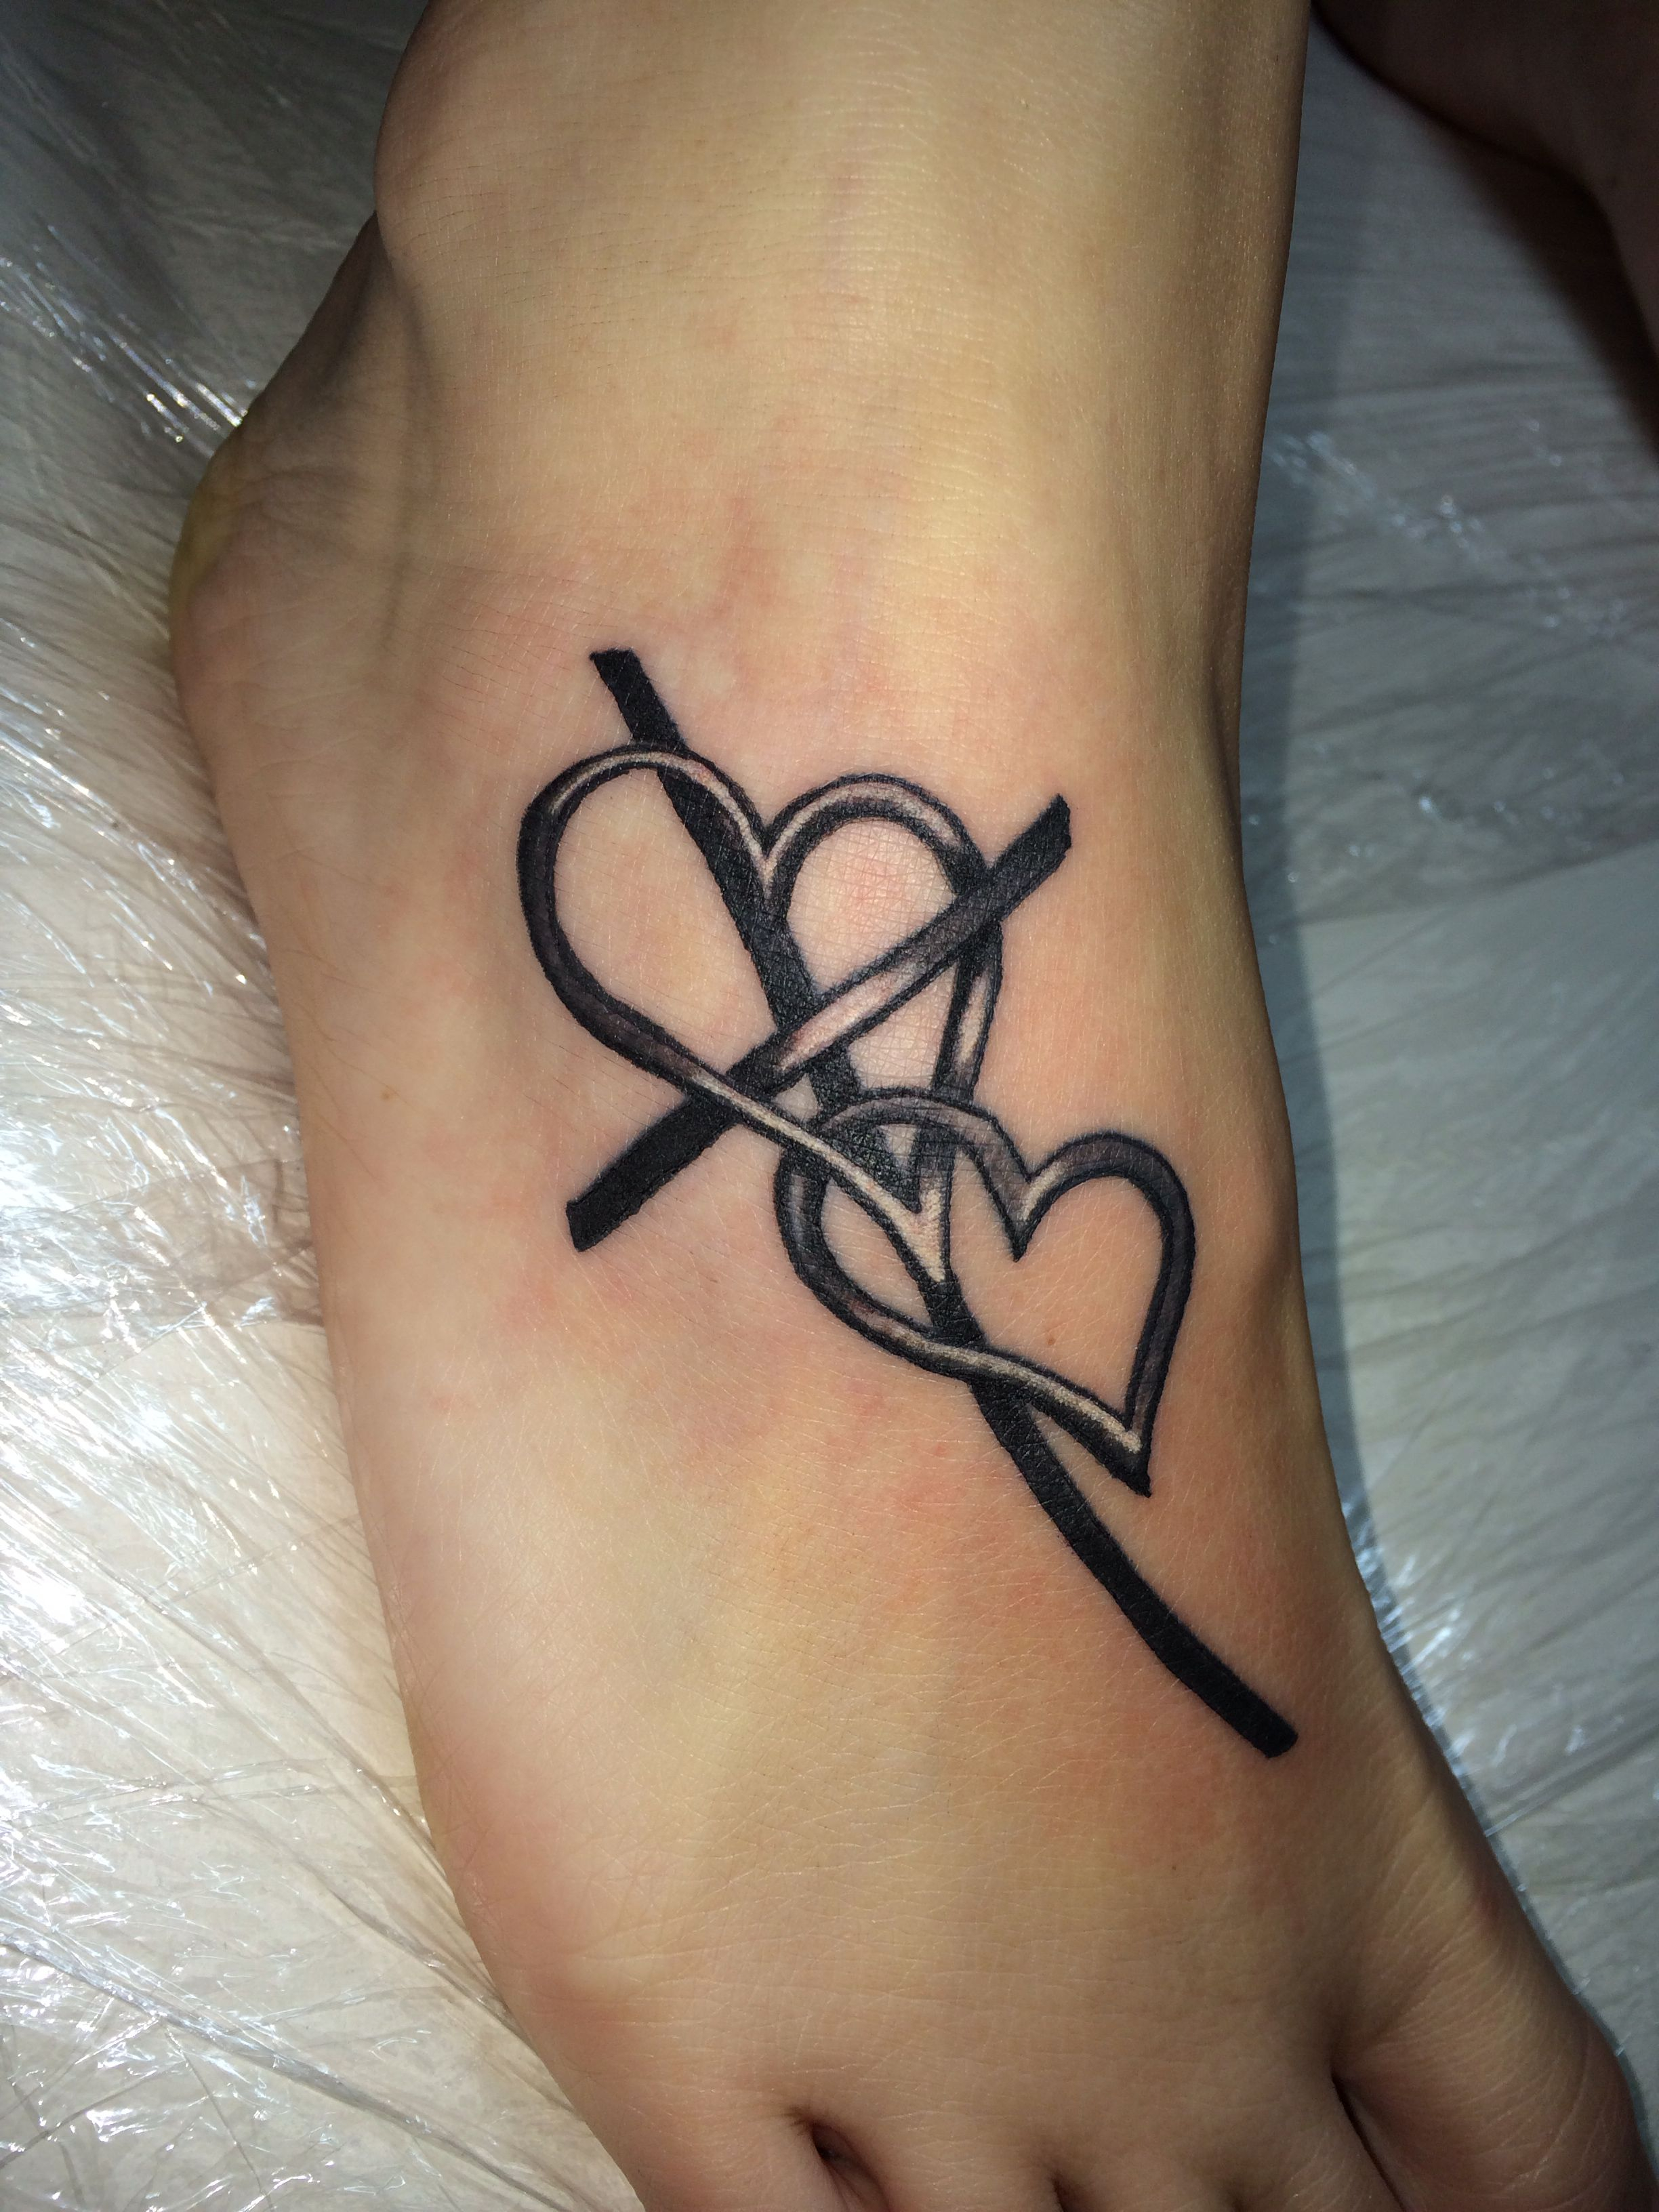 Cross Tattoo Cross With Heart Tattoo Foot Tattoo Tattoos inside dimensions 2448 X 3264